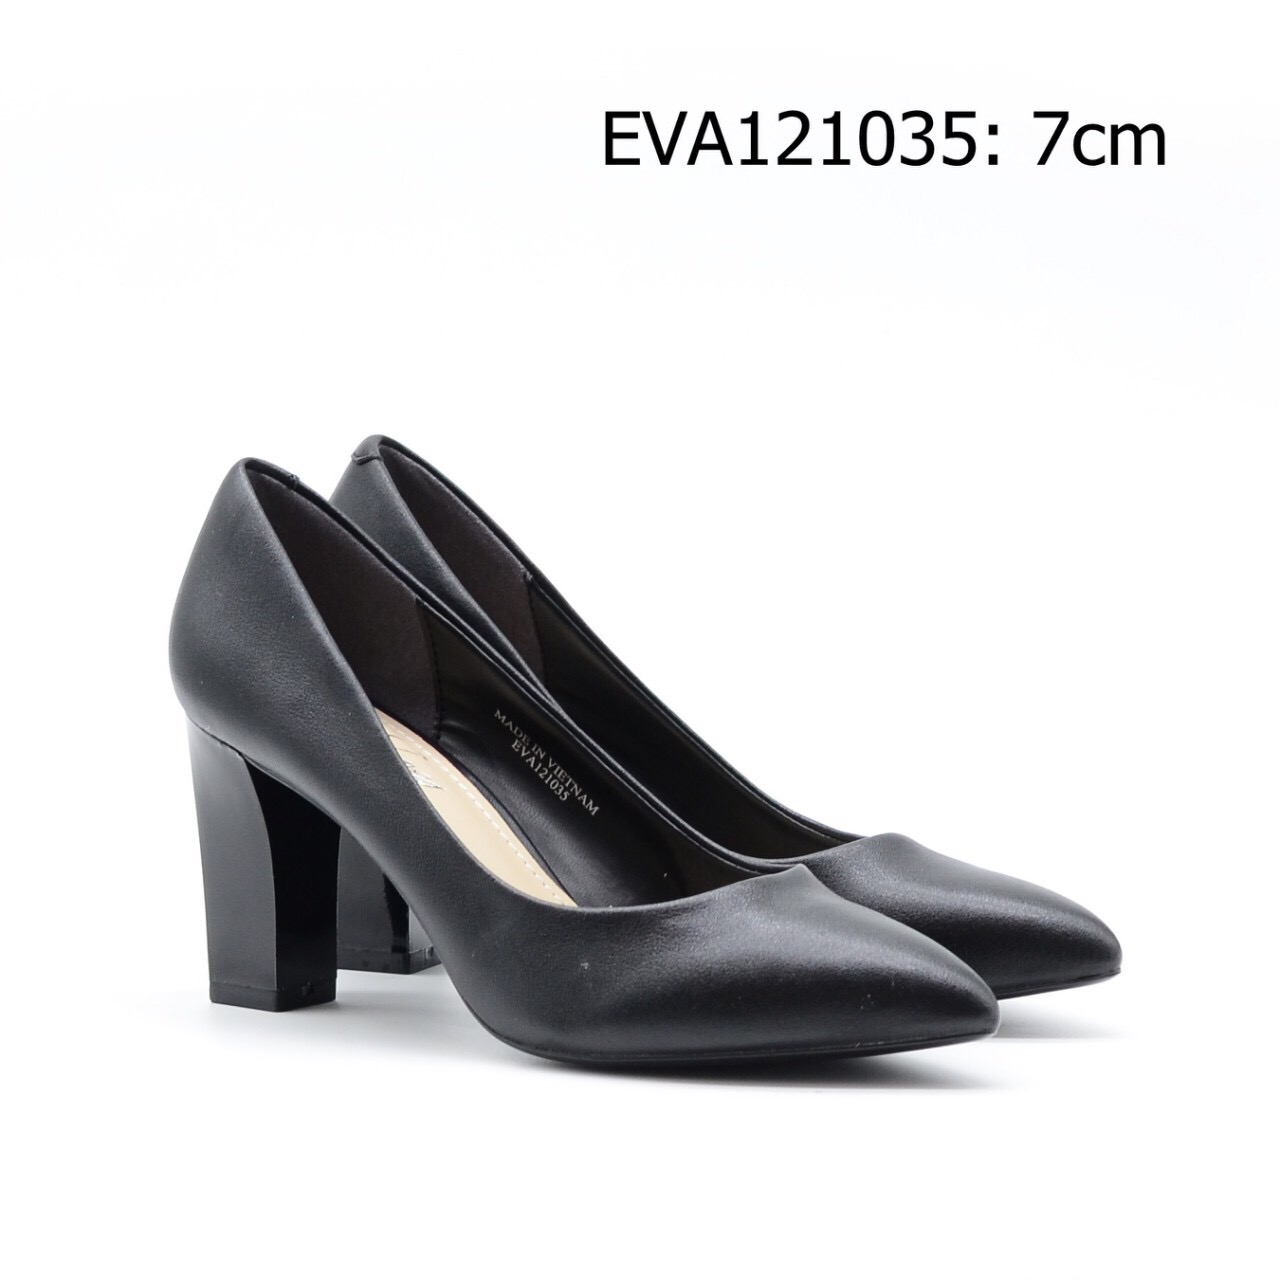 Giày cao gót EVA121035 cao 7cm thiết kế đơn giản, sang trọng